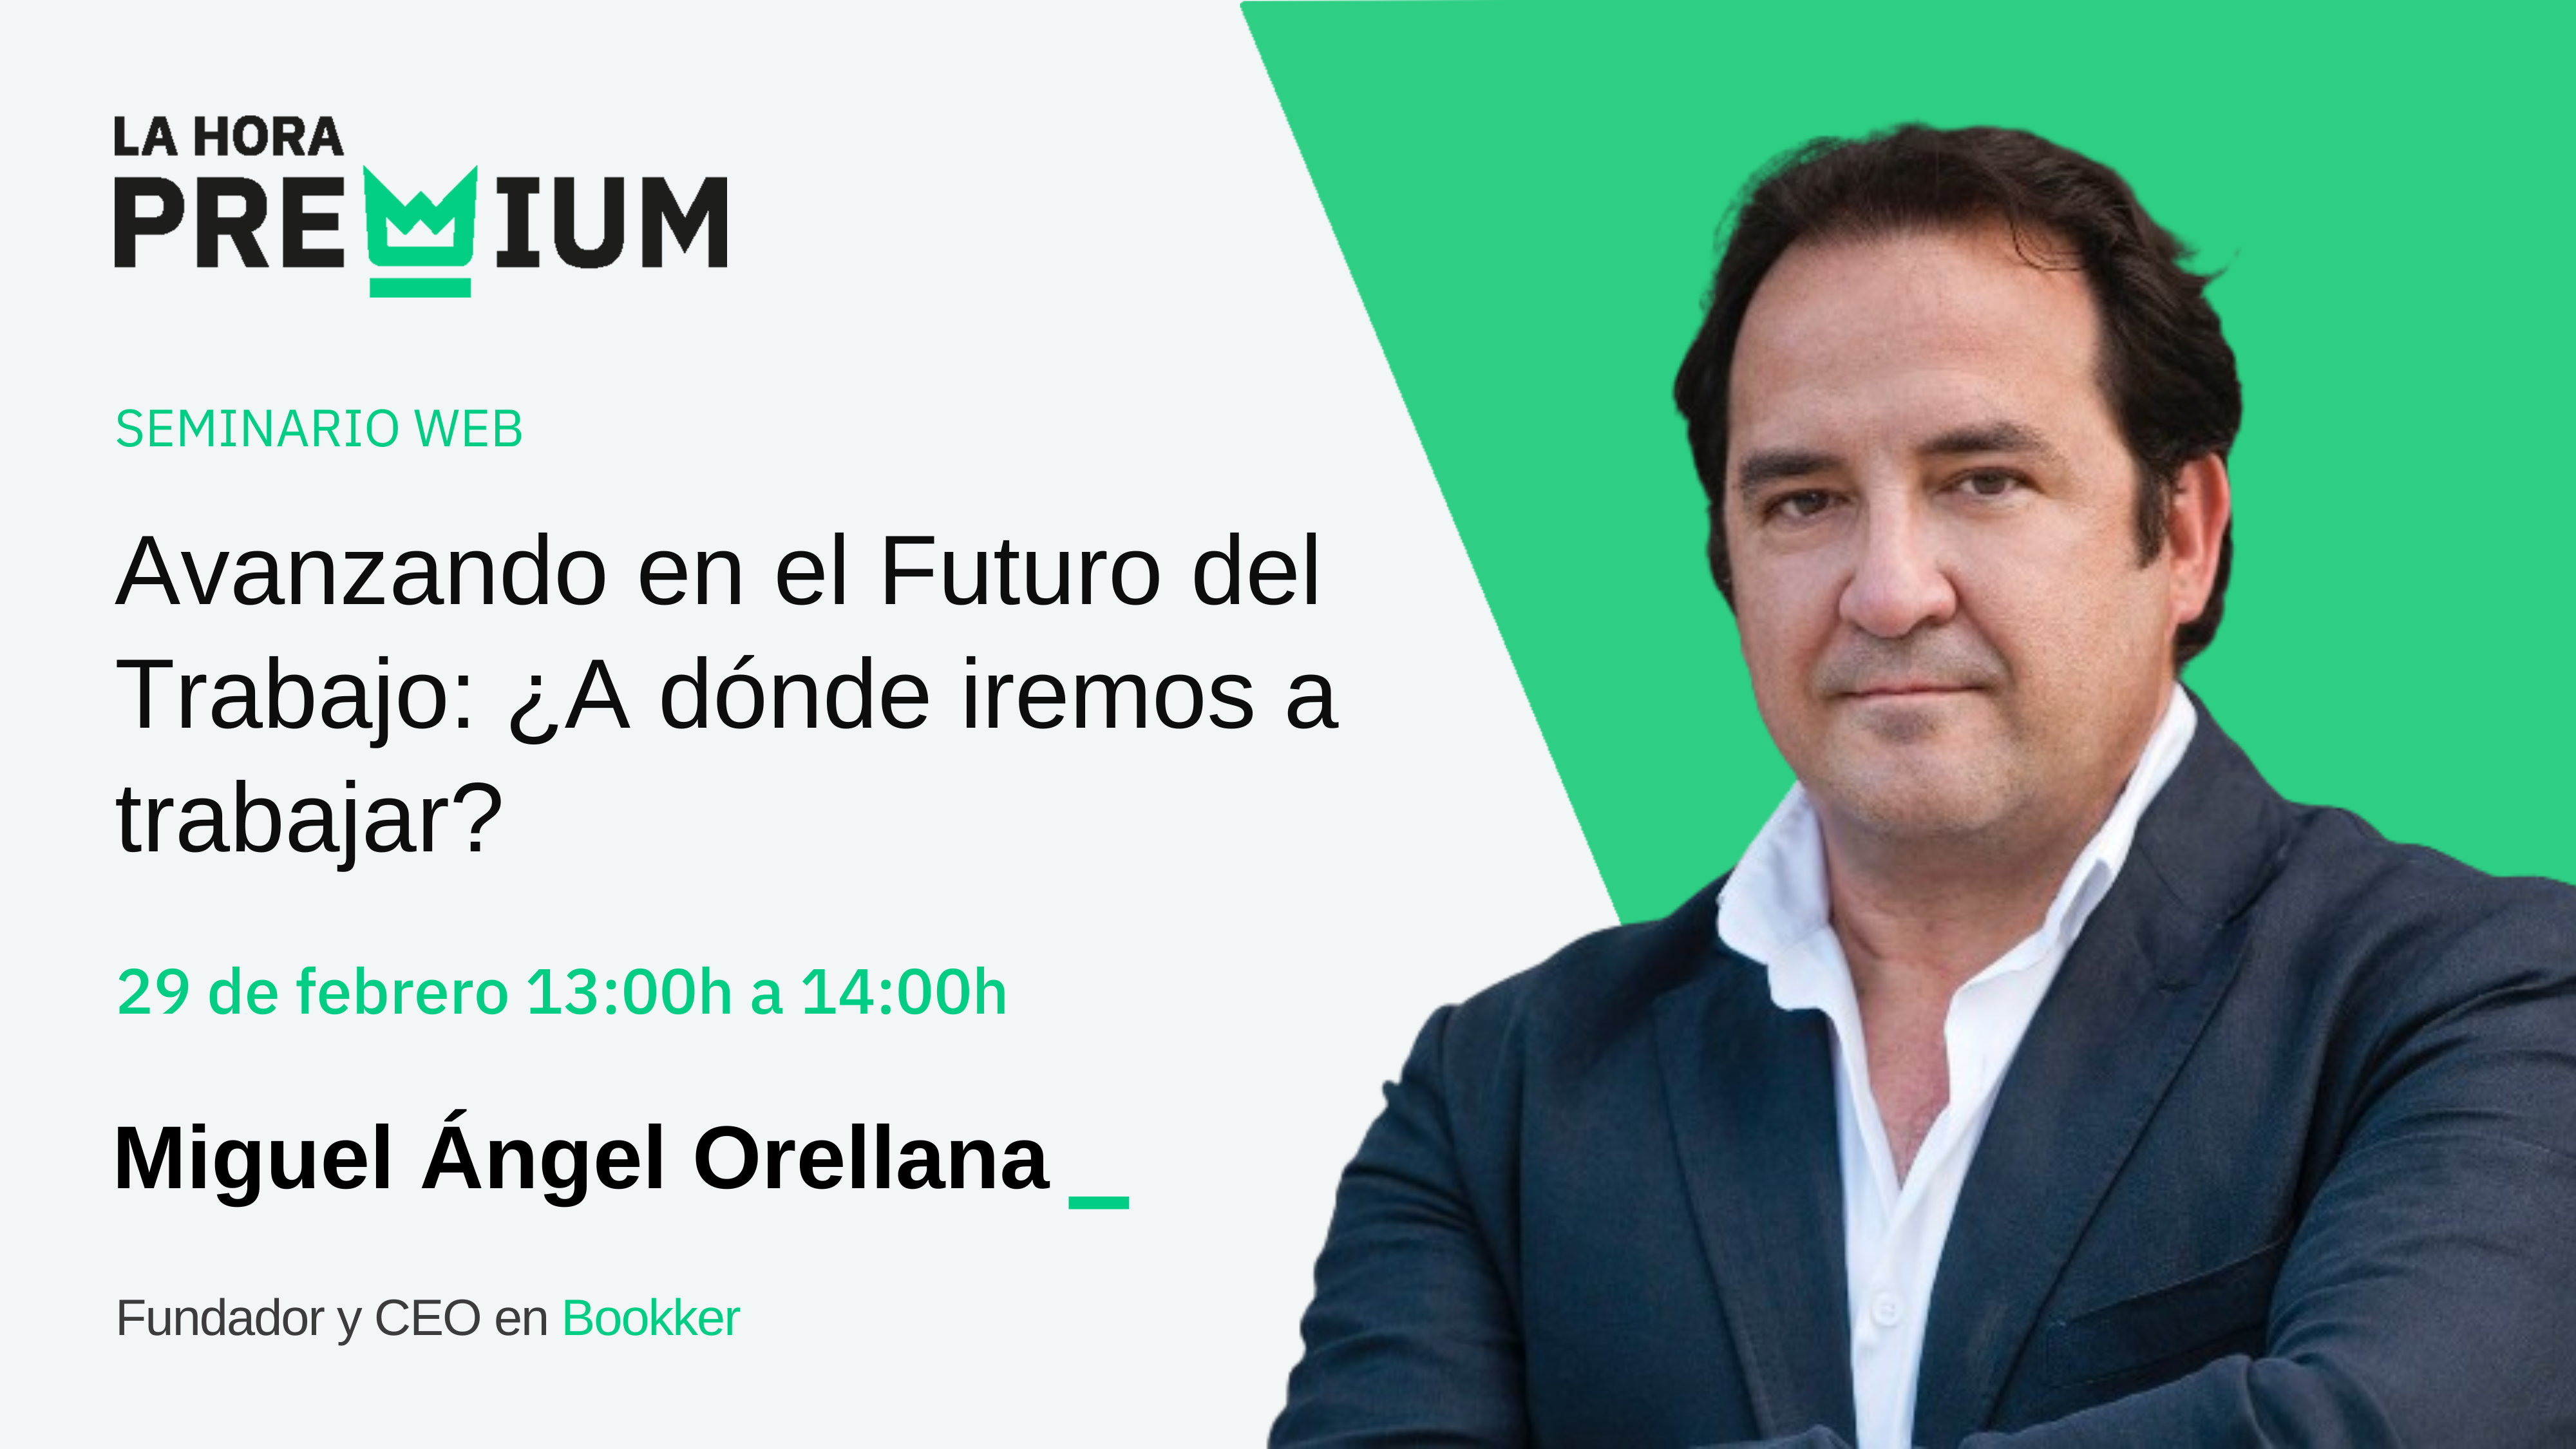 Miguel Ángel Orellana hablará acerca del avance en el futuro del trabajo en la Hora Premium